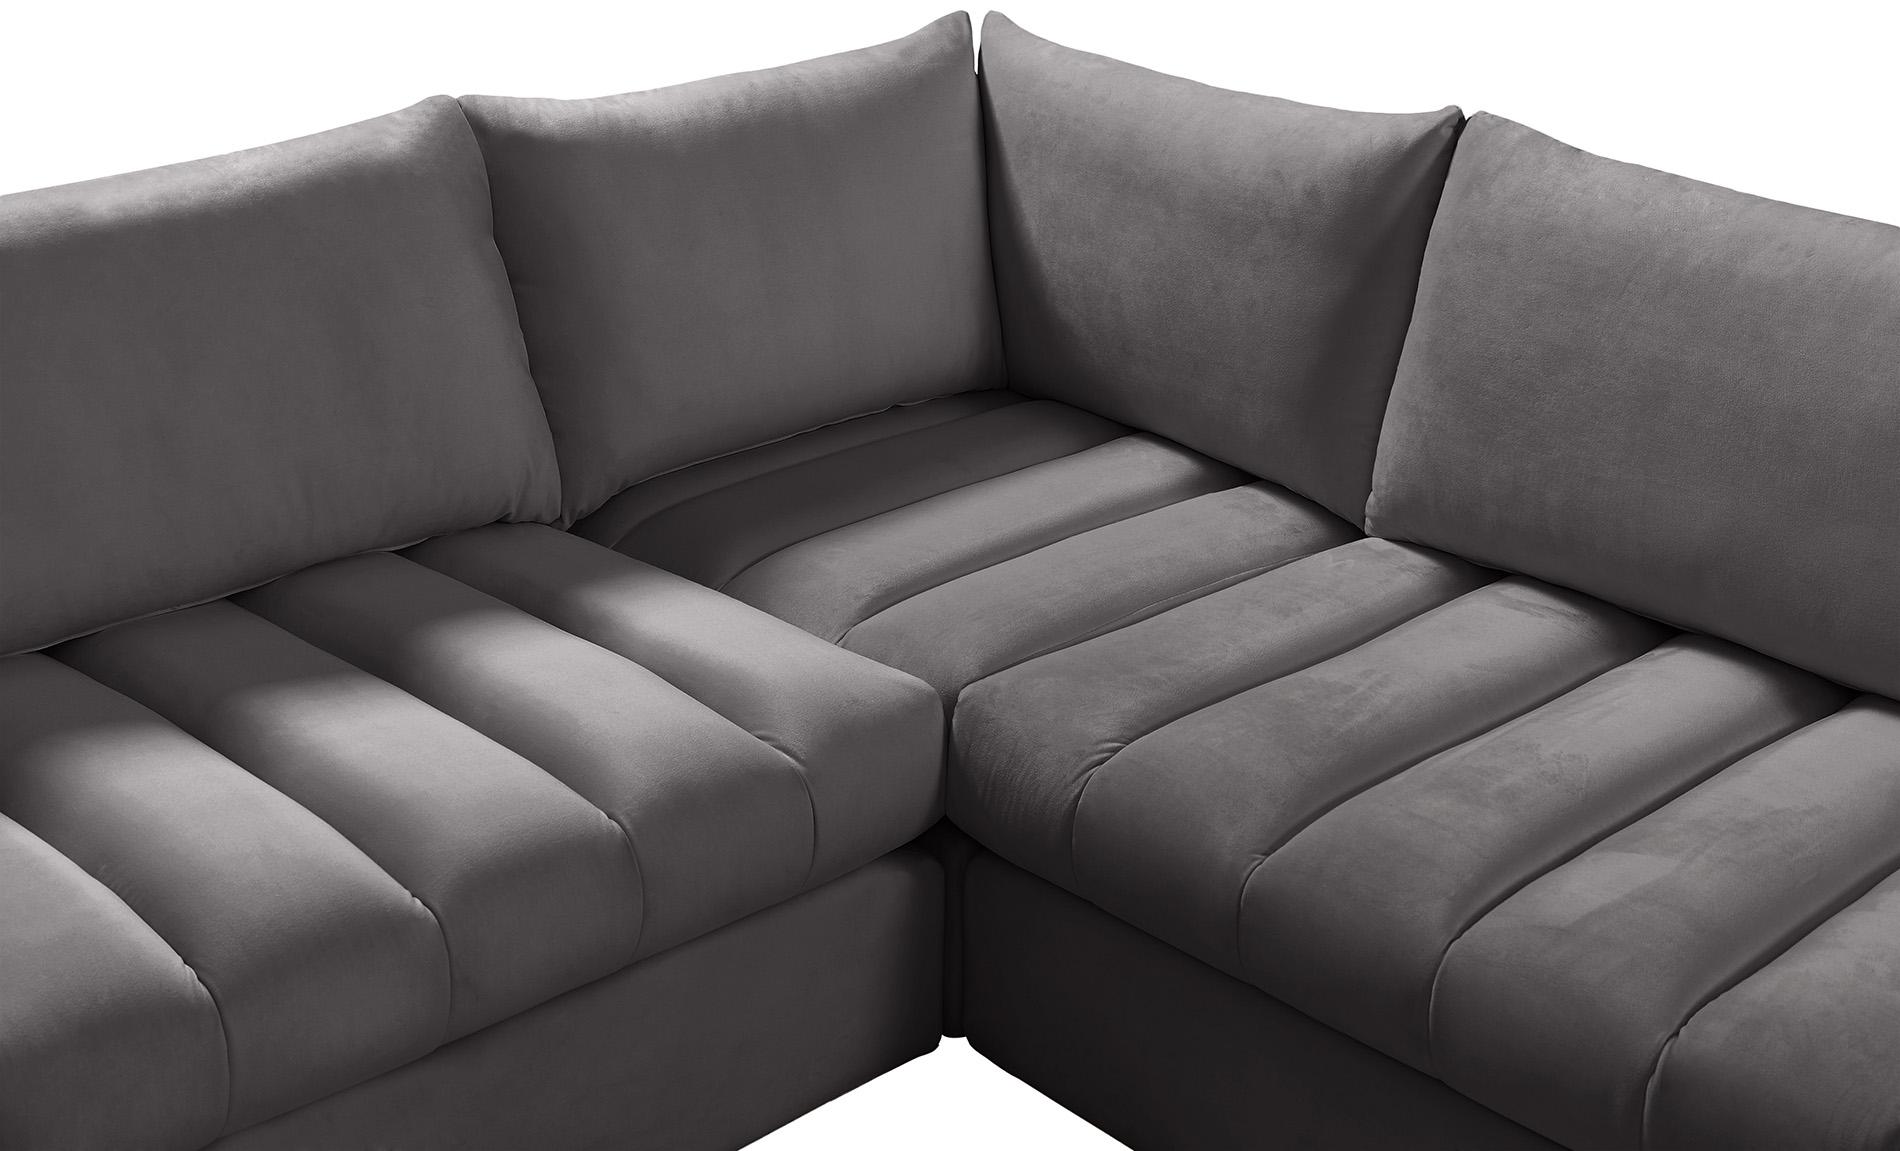 

    
Meridian Furniture JACOB 649Grey-Sec7C Modular Sectional Sofa Gray 649Grey-Sec7C
